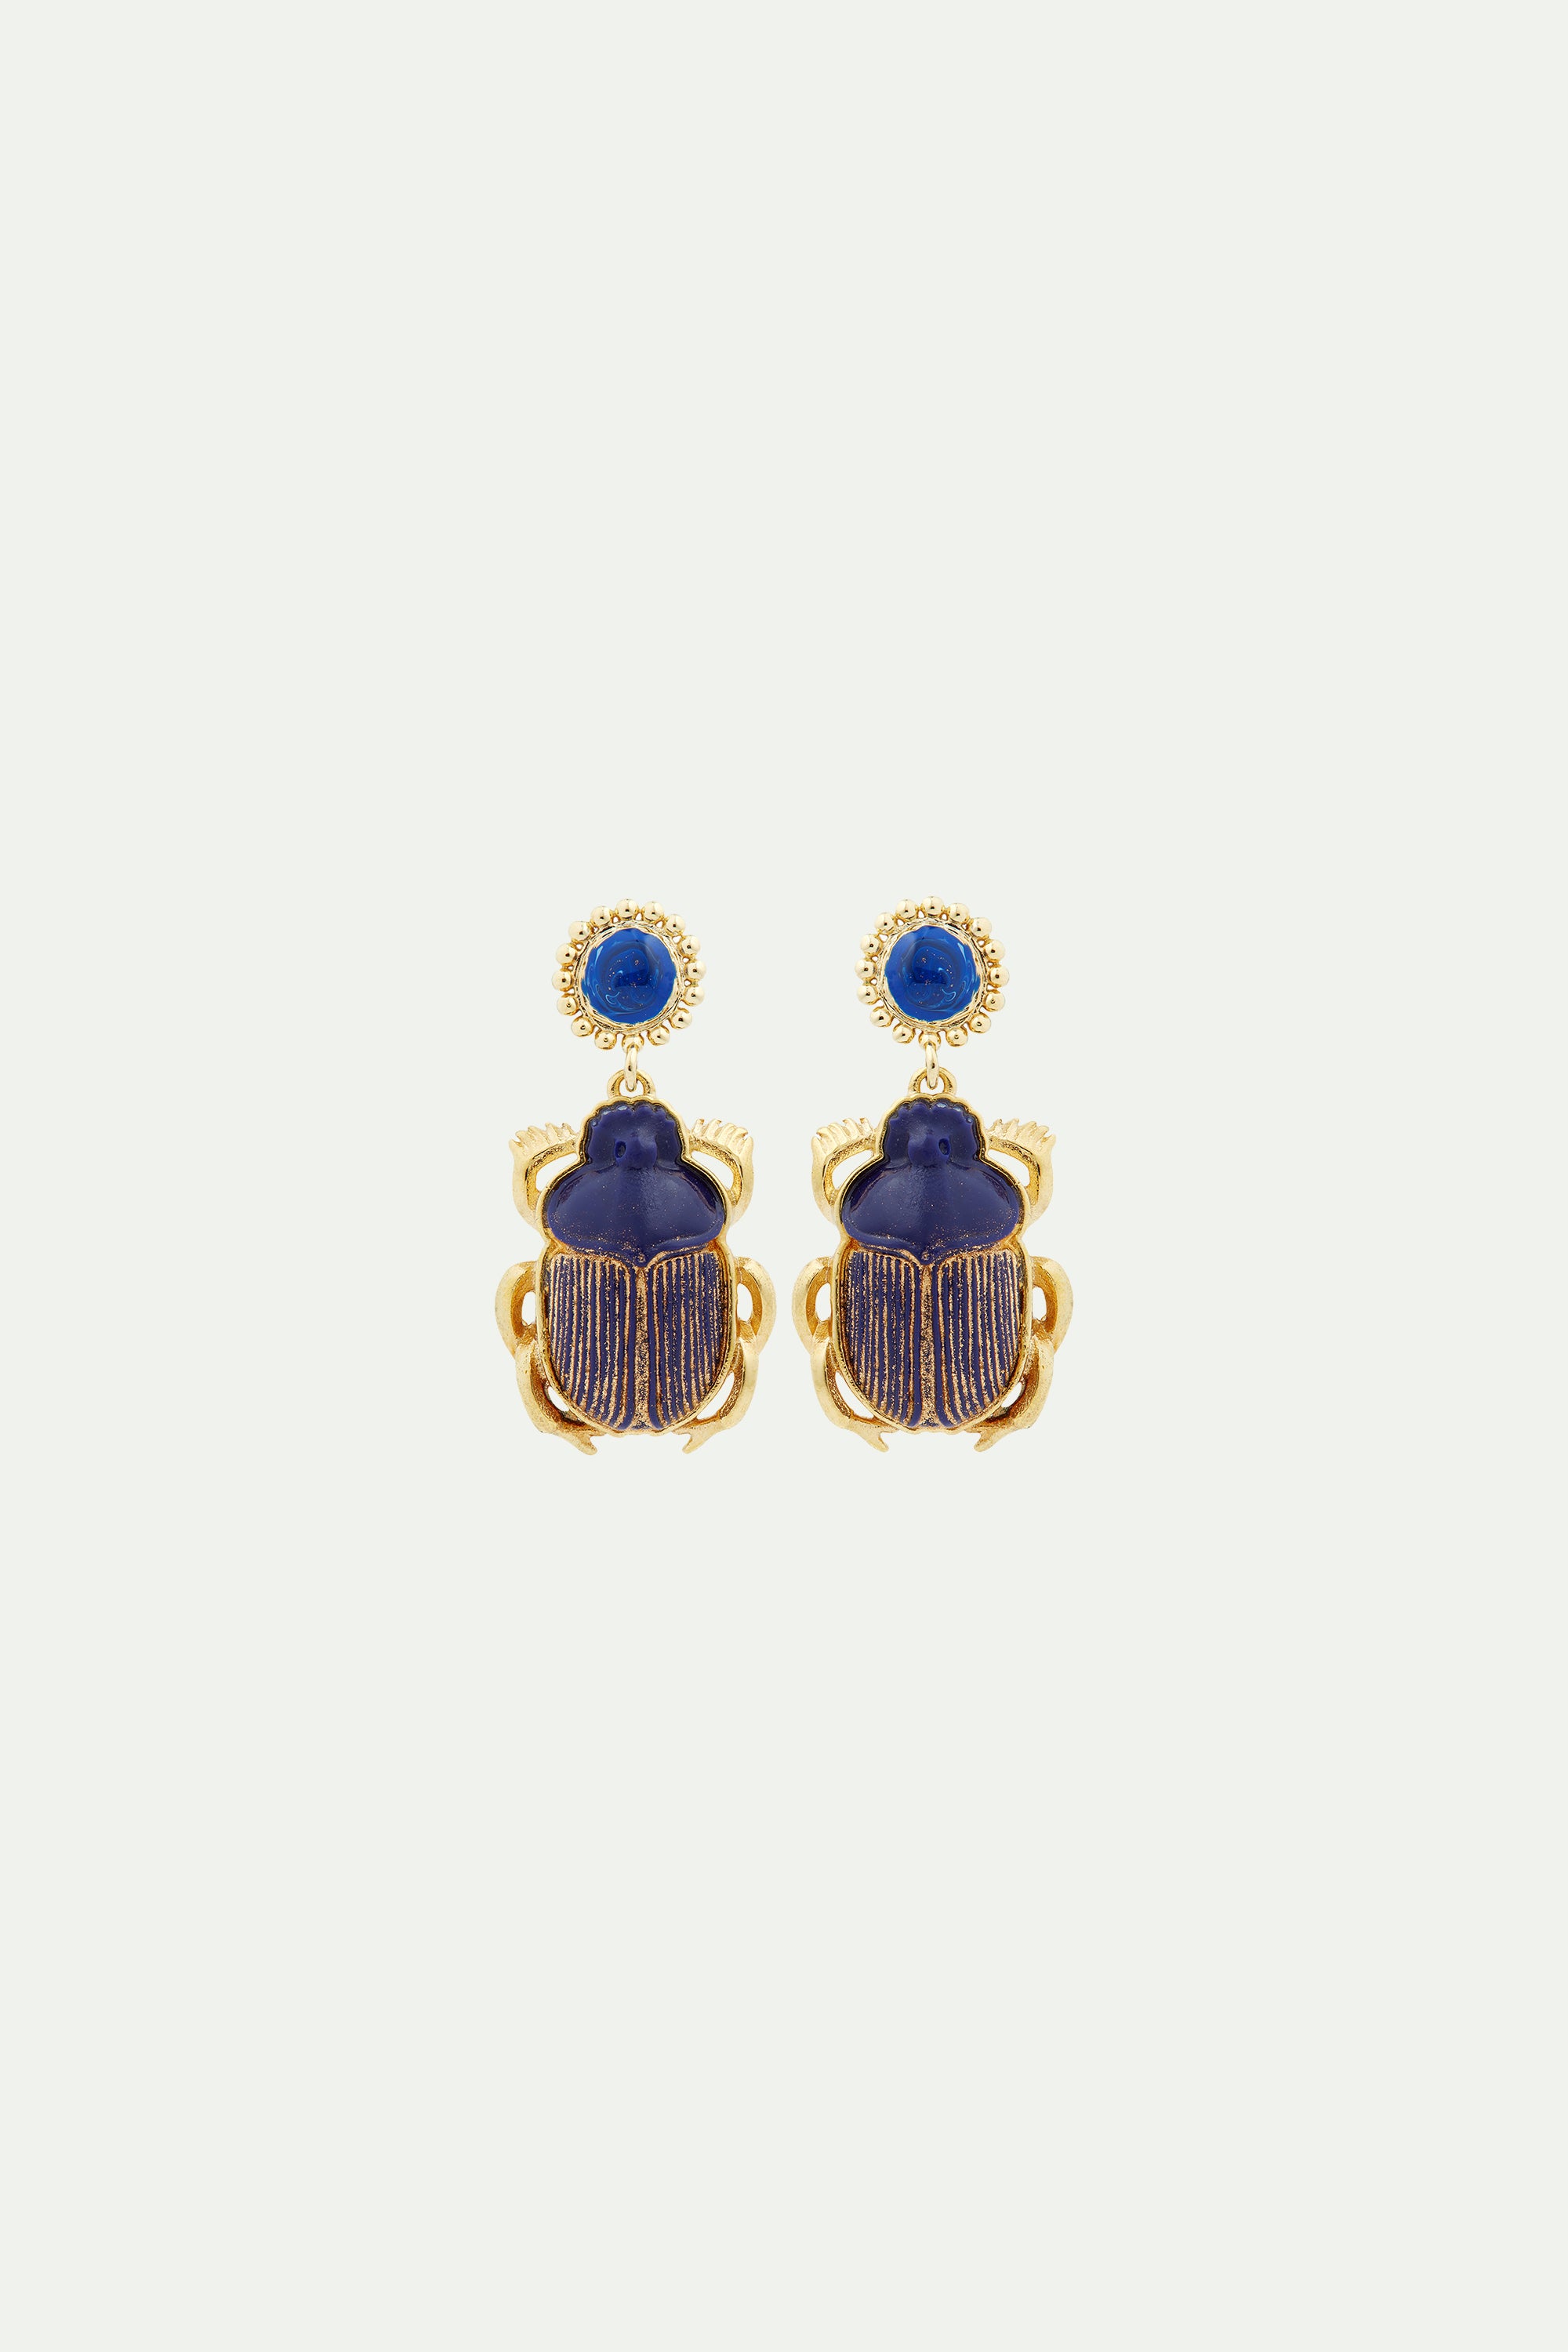 Pendientes bolitas escarabajo azul sagrado de Egipto